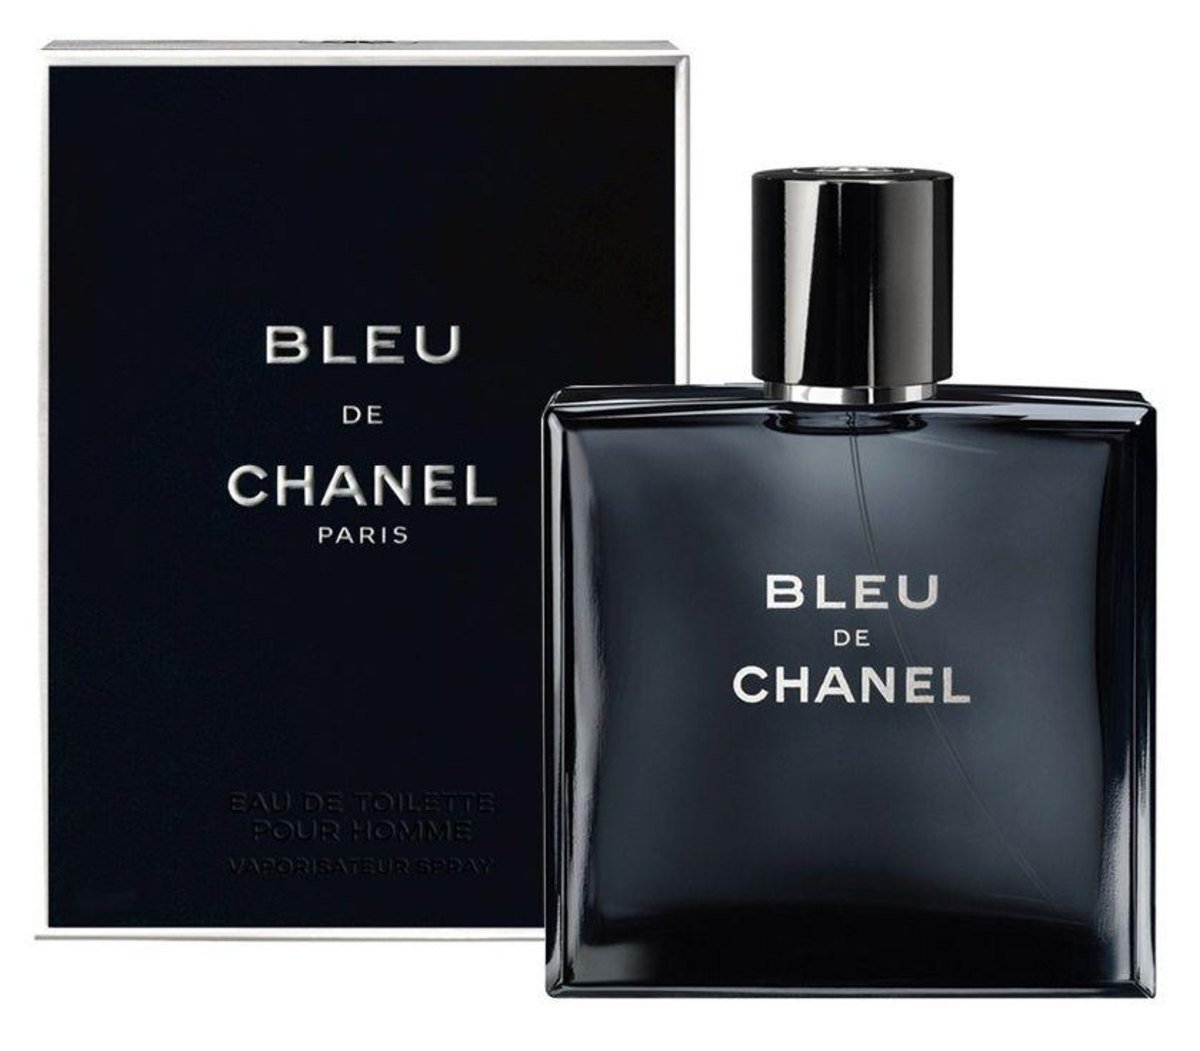 Bleu de Channel - Um dos melhores perfumes masculinos, em qualquer concentração